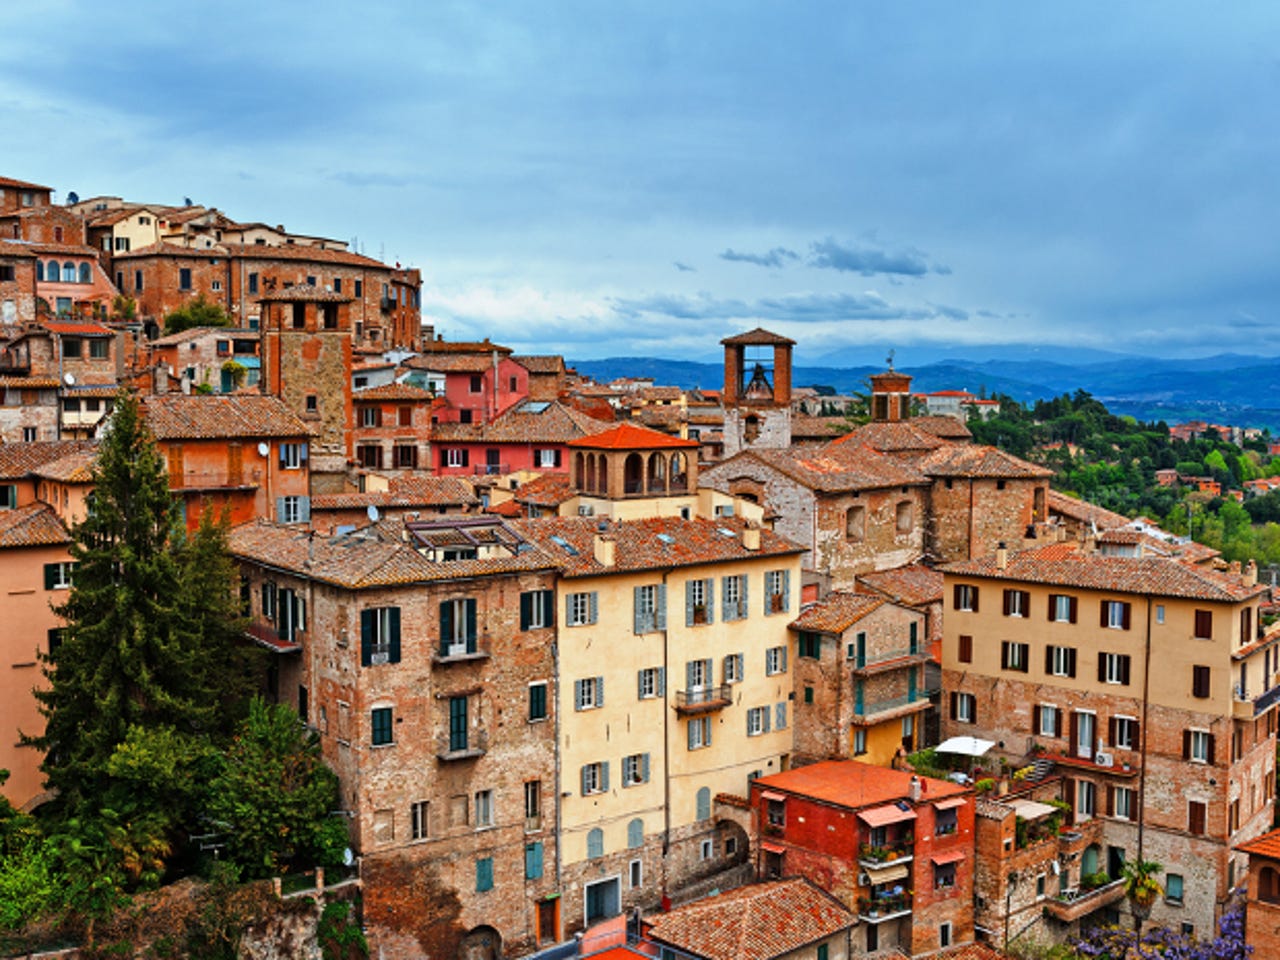 Perugia, the capital of Umbria